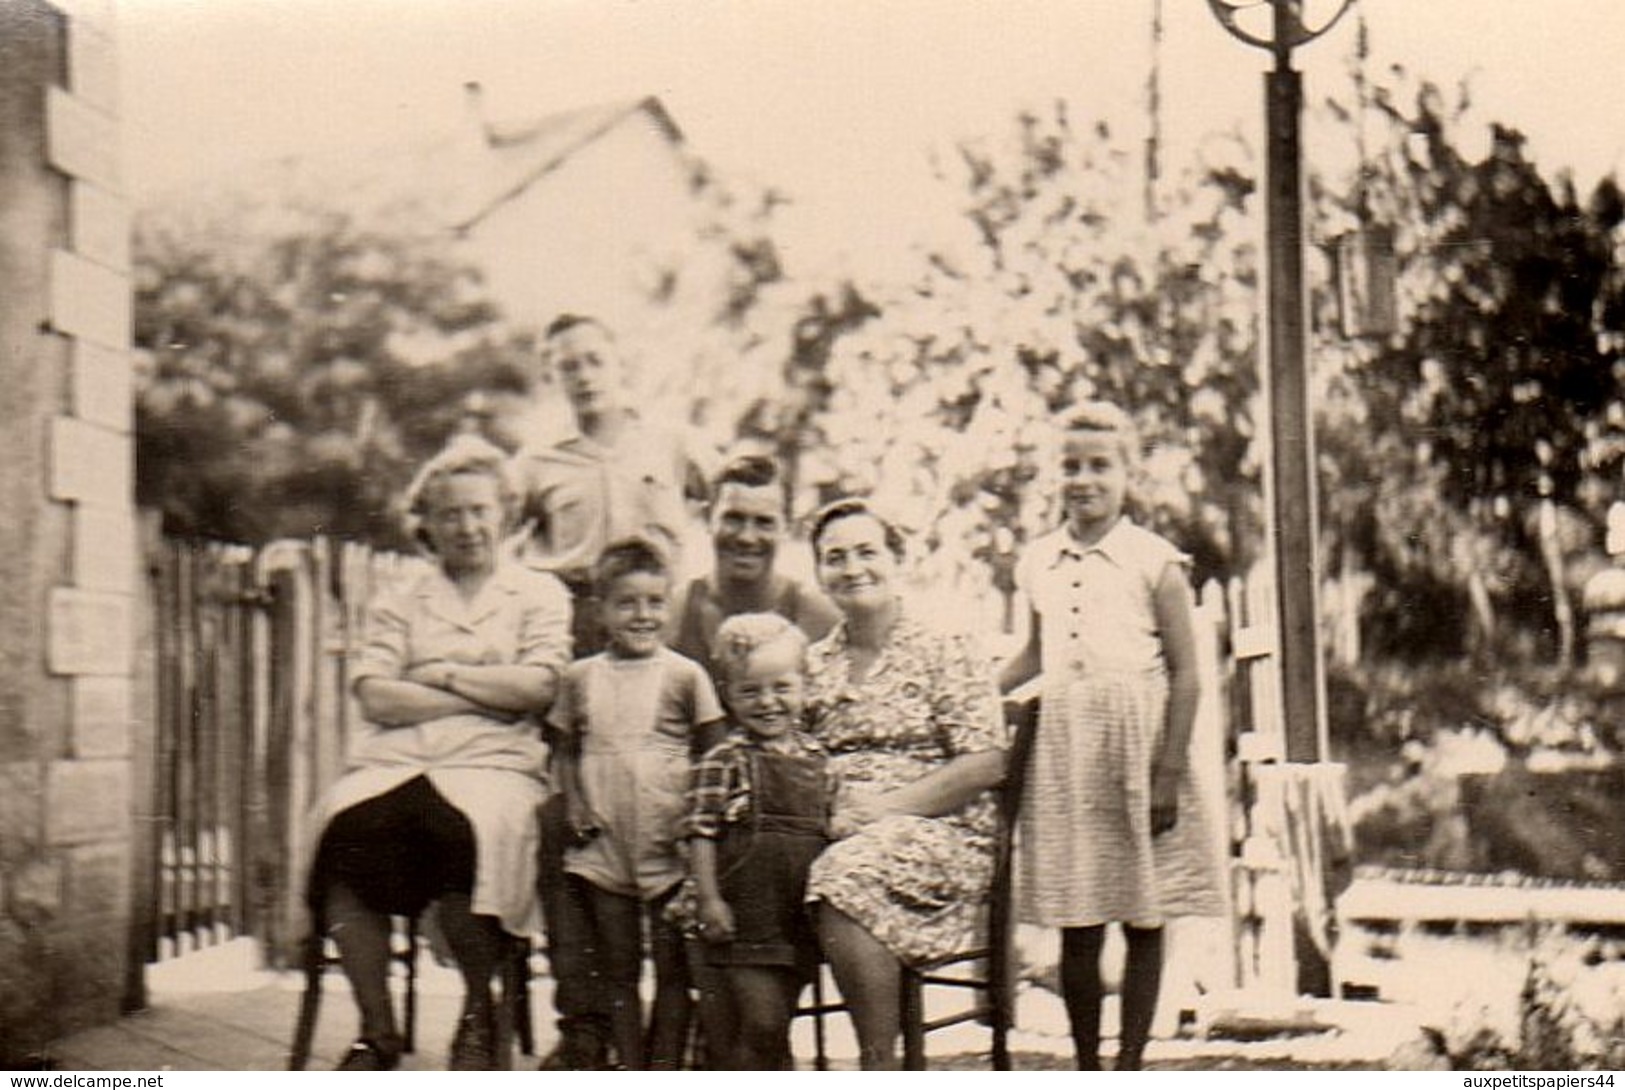 Lot de 18 Photos Originales Famille & Amis dans les années 1930 - 1940 - Mode, Mobilier, Coiffures, Chapeaux, ....